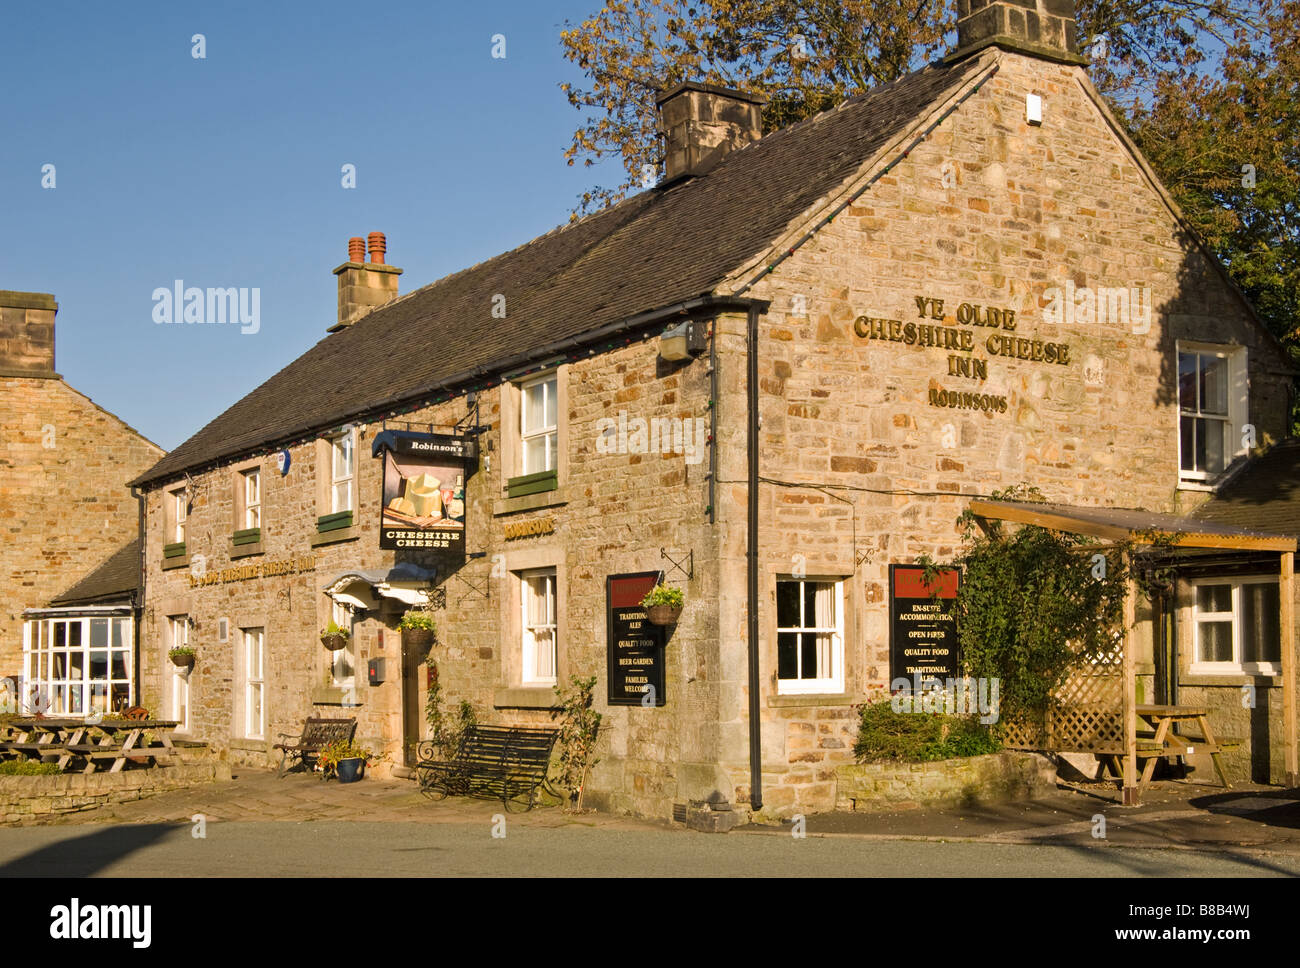 Ye Olde Cheshire Cheese Inn Public House, Village de Longnor, parc national de Peak District, Derbyshire, Angleterre, RU Banque D'Images